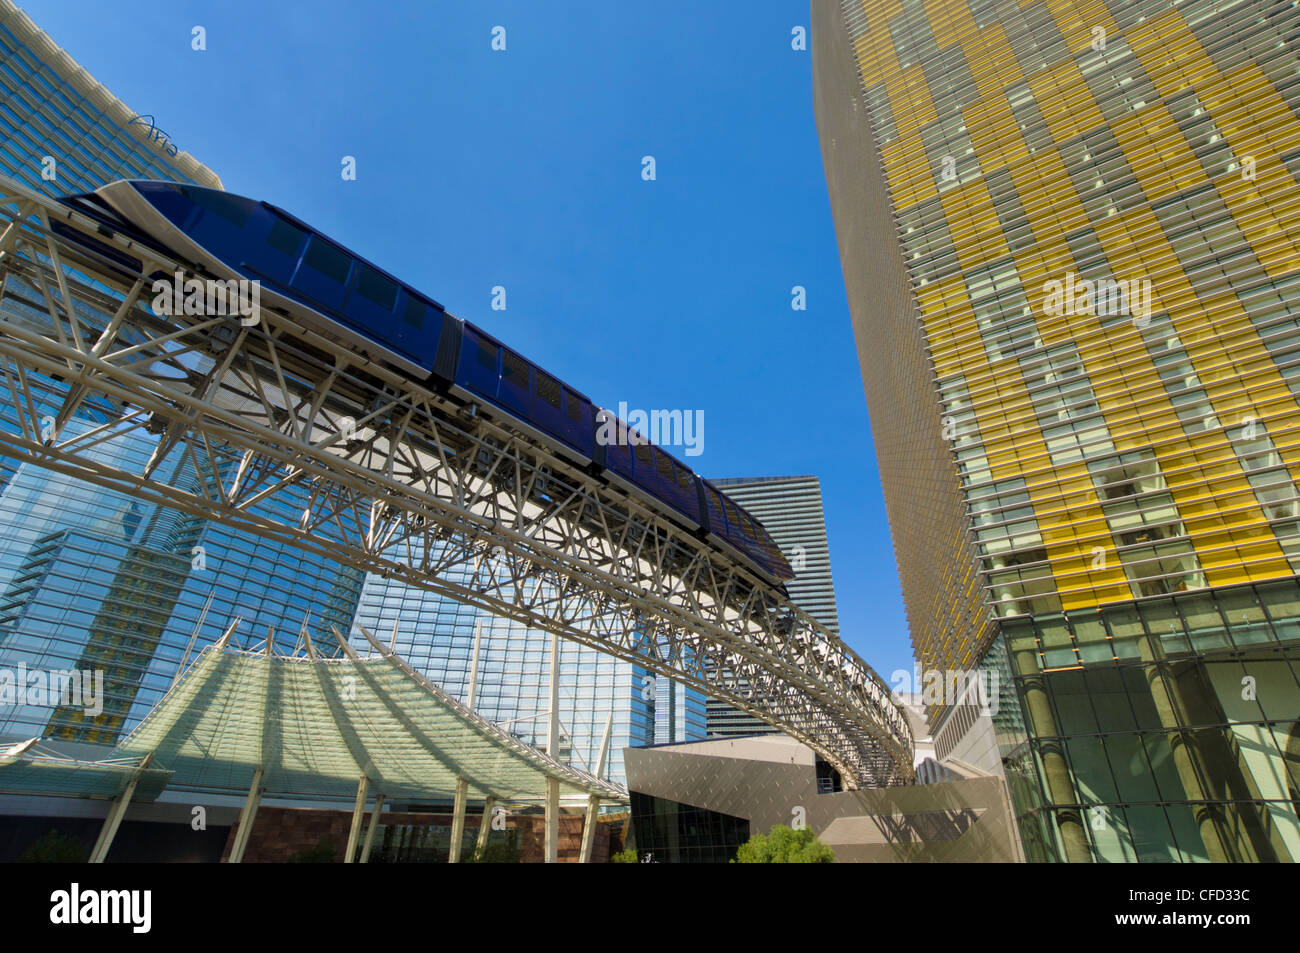 El monorraíl, CityCenter complejo, Las Vegas Boulevard South, el Strip, en Las Vegas, Nevada, EE.UU. Foto de stock